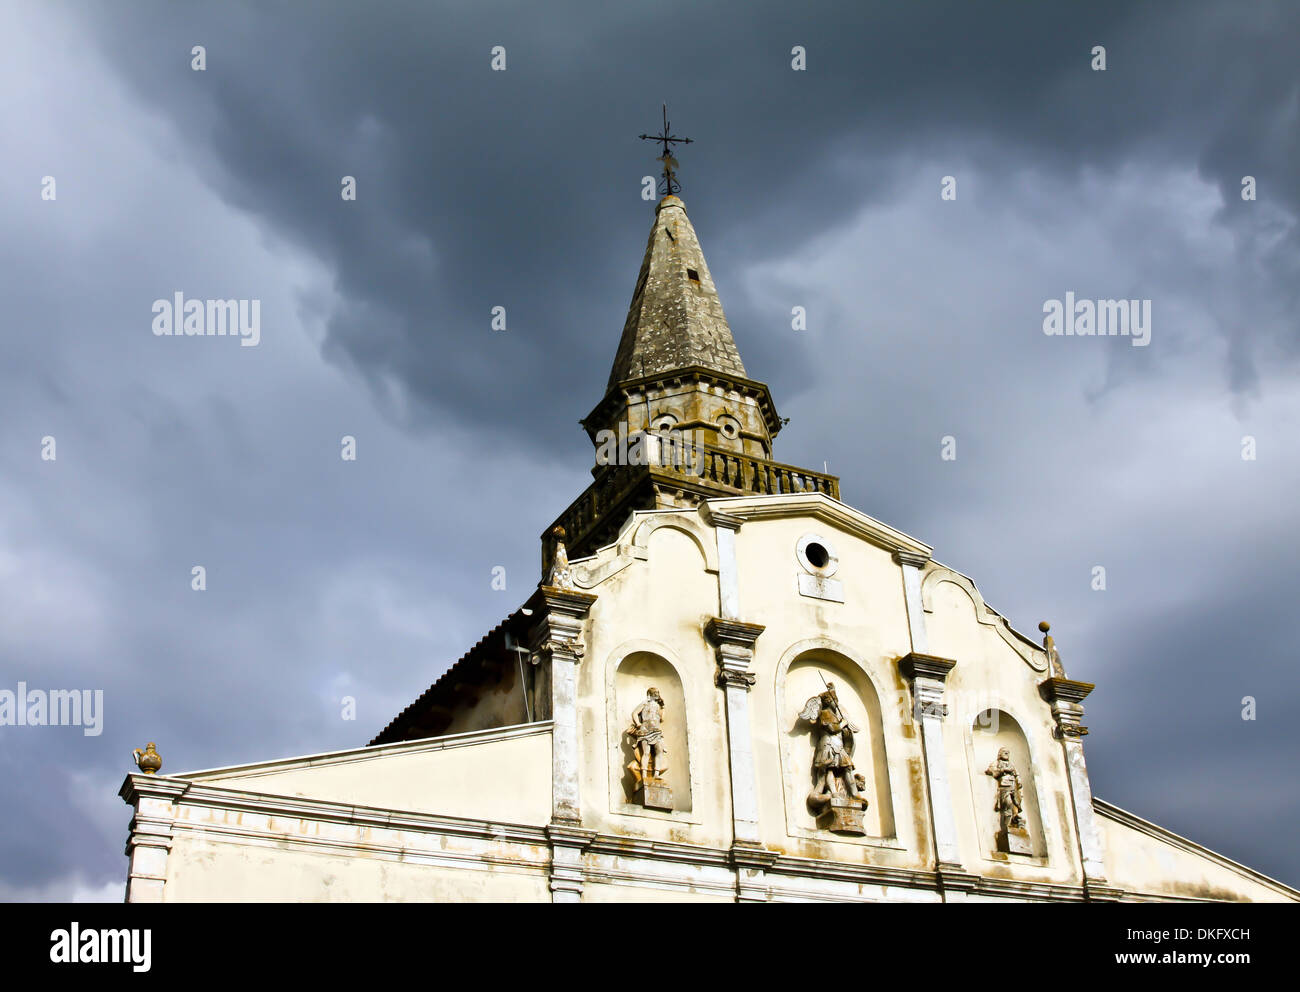 Eglise avec clocher sous les nuages noirs Banque D'Images